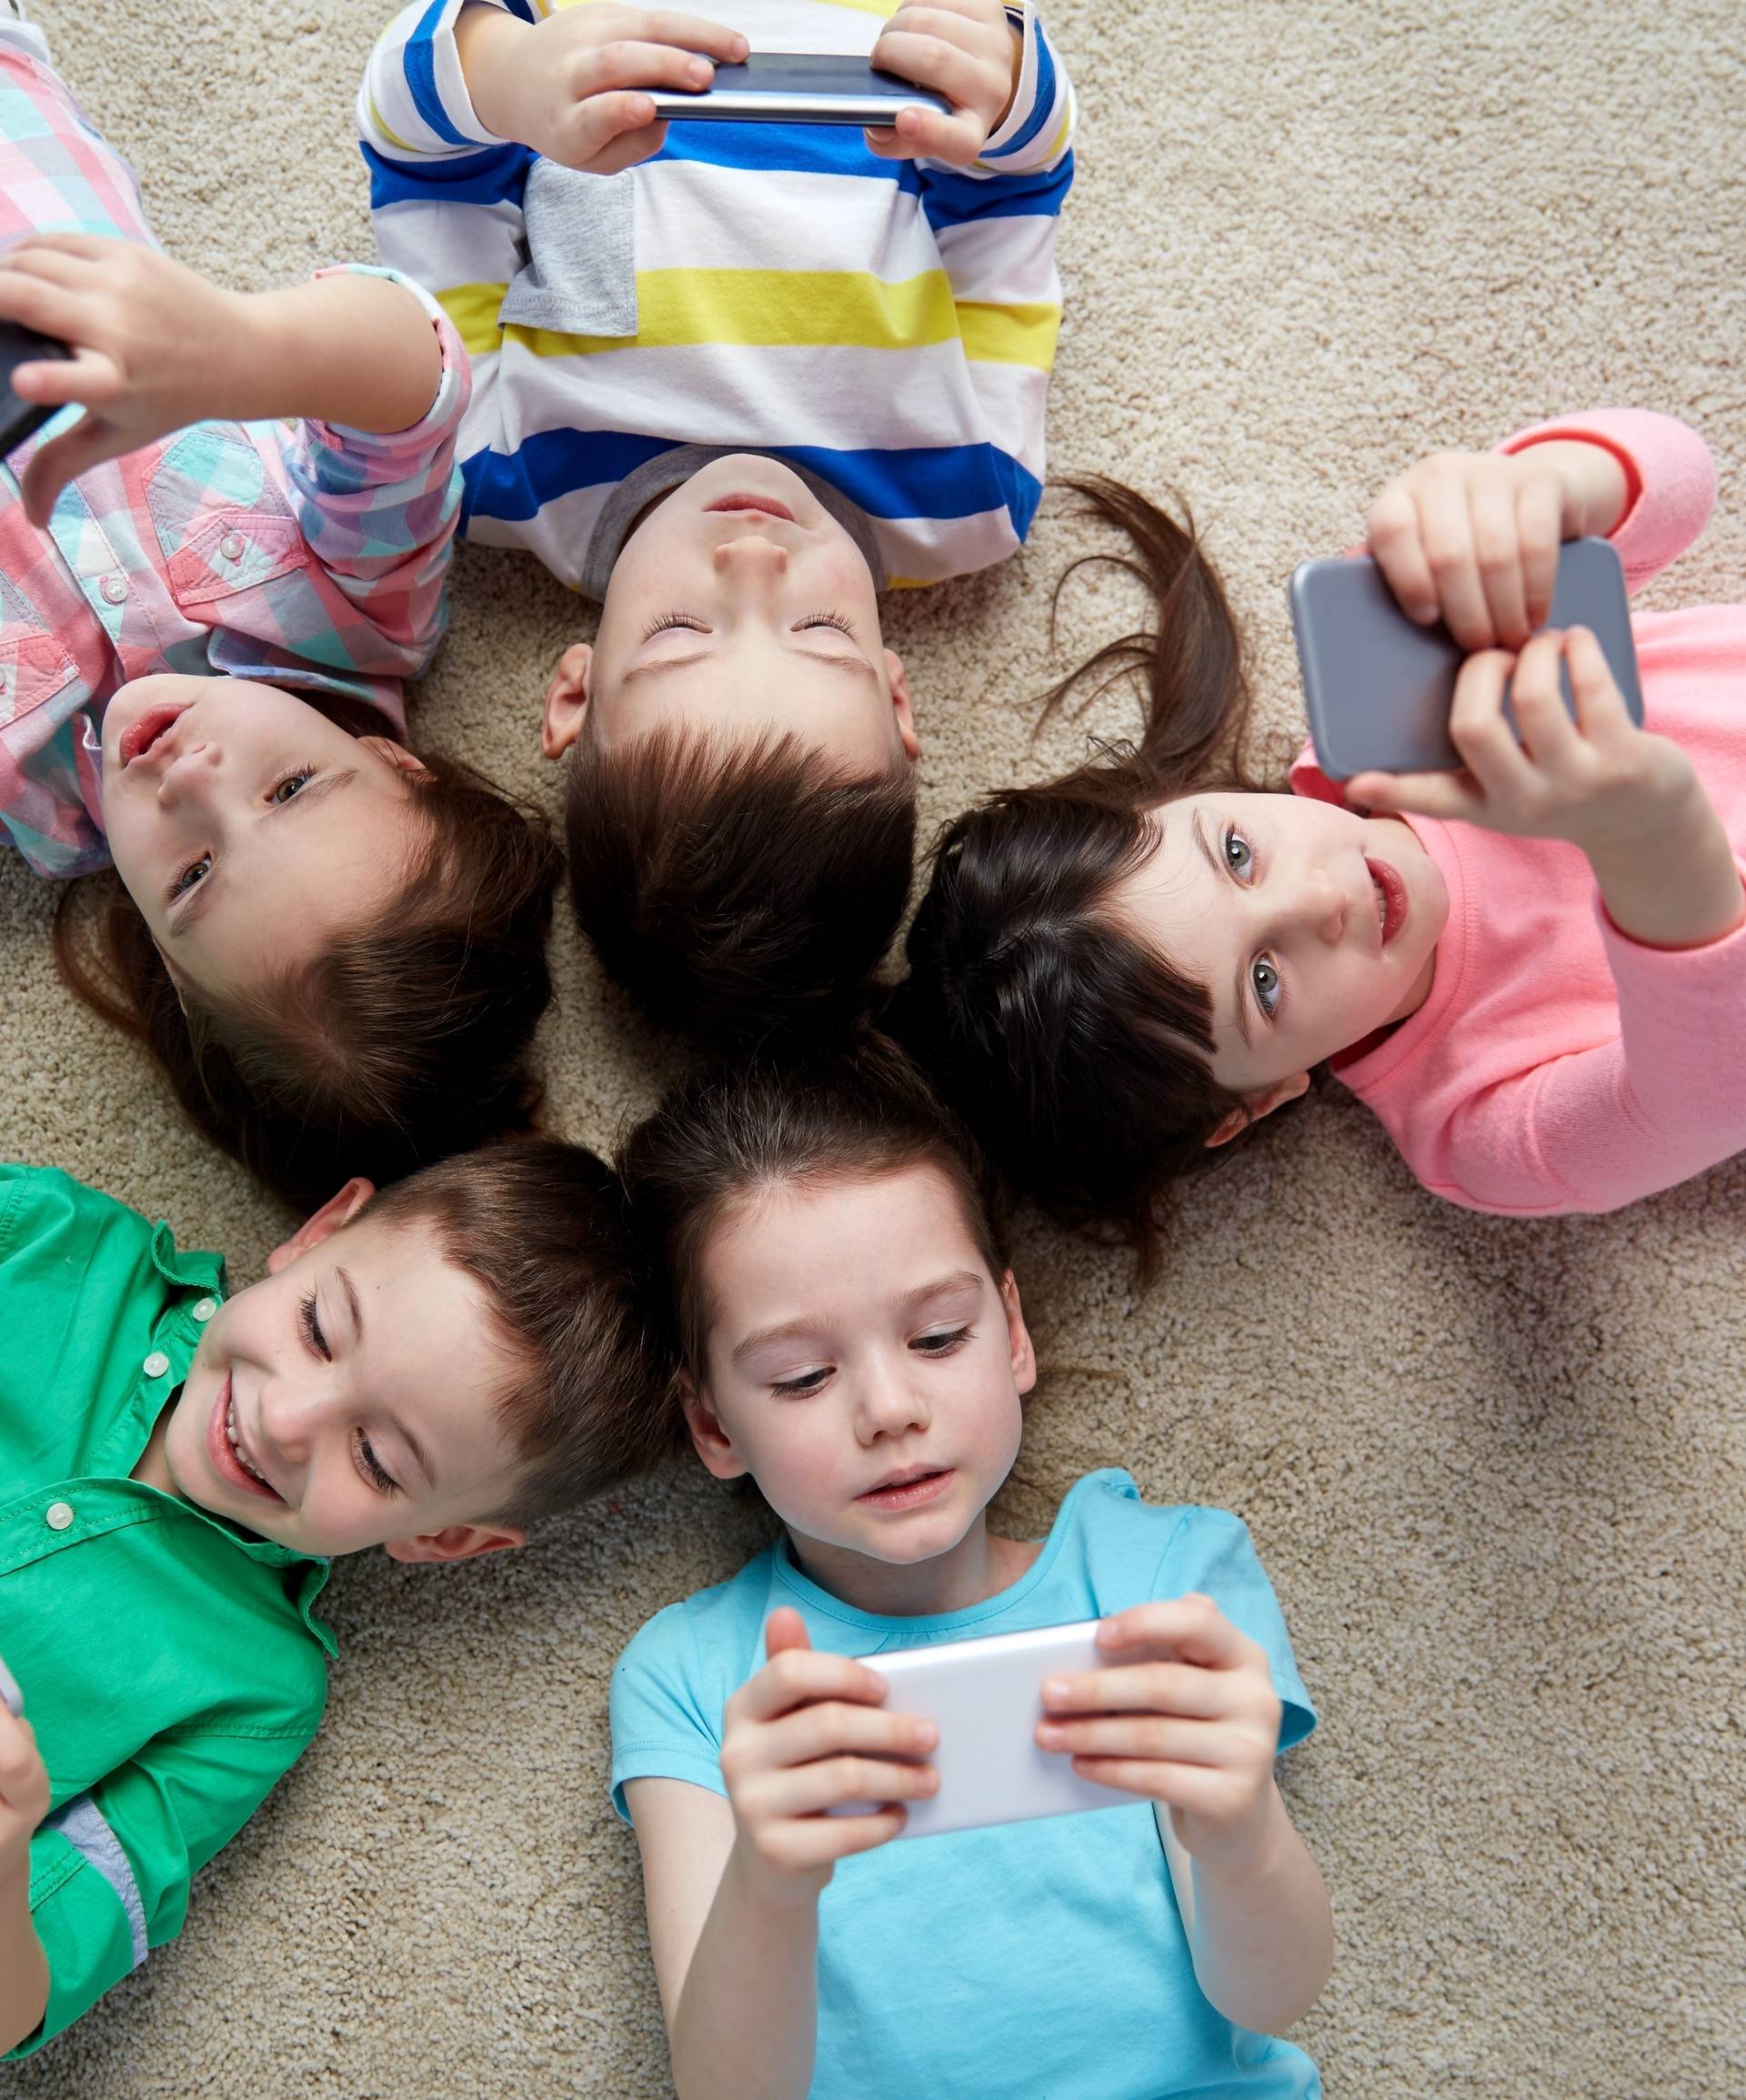 Djeca u Hrvatskoj dobiju svoj mobitel čak prije 4. rođendana